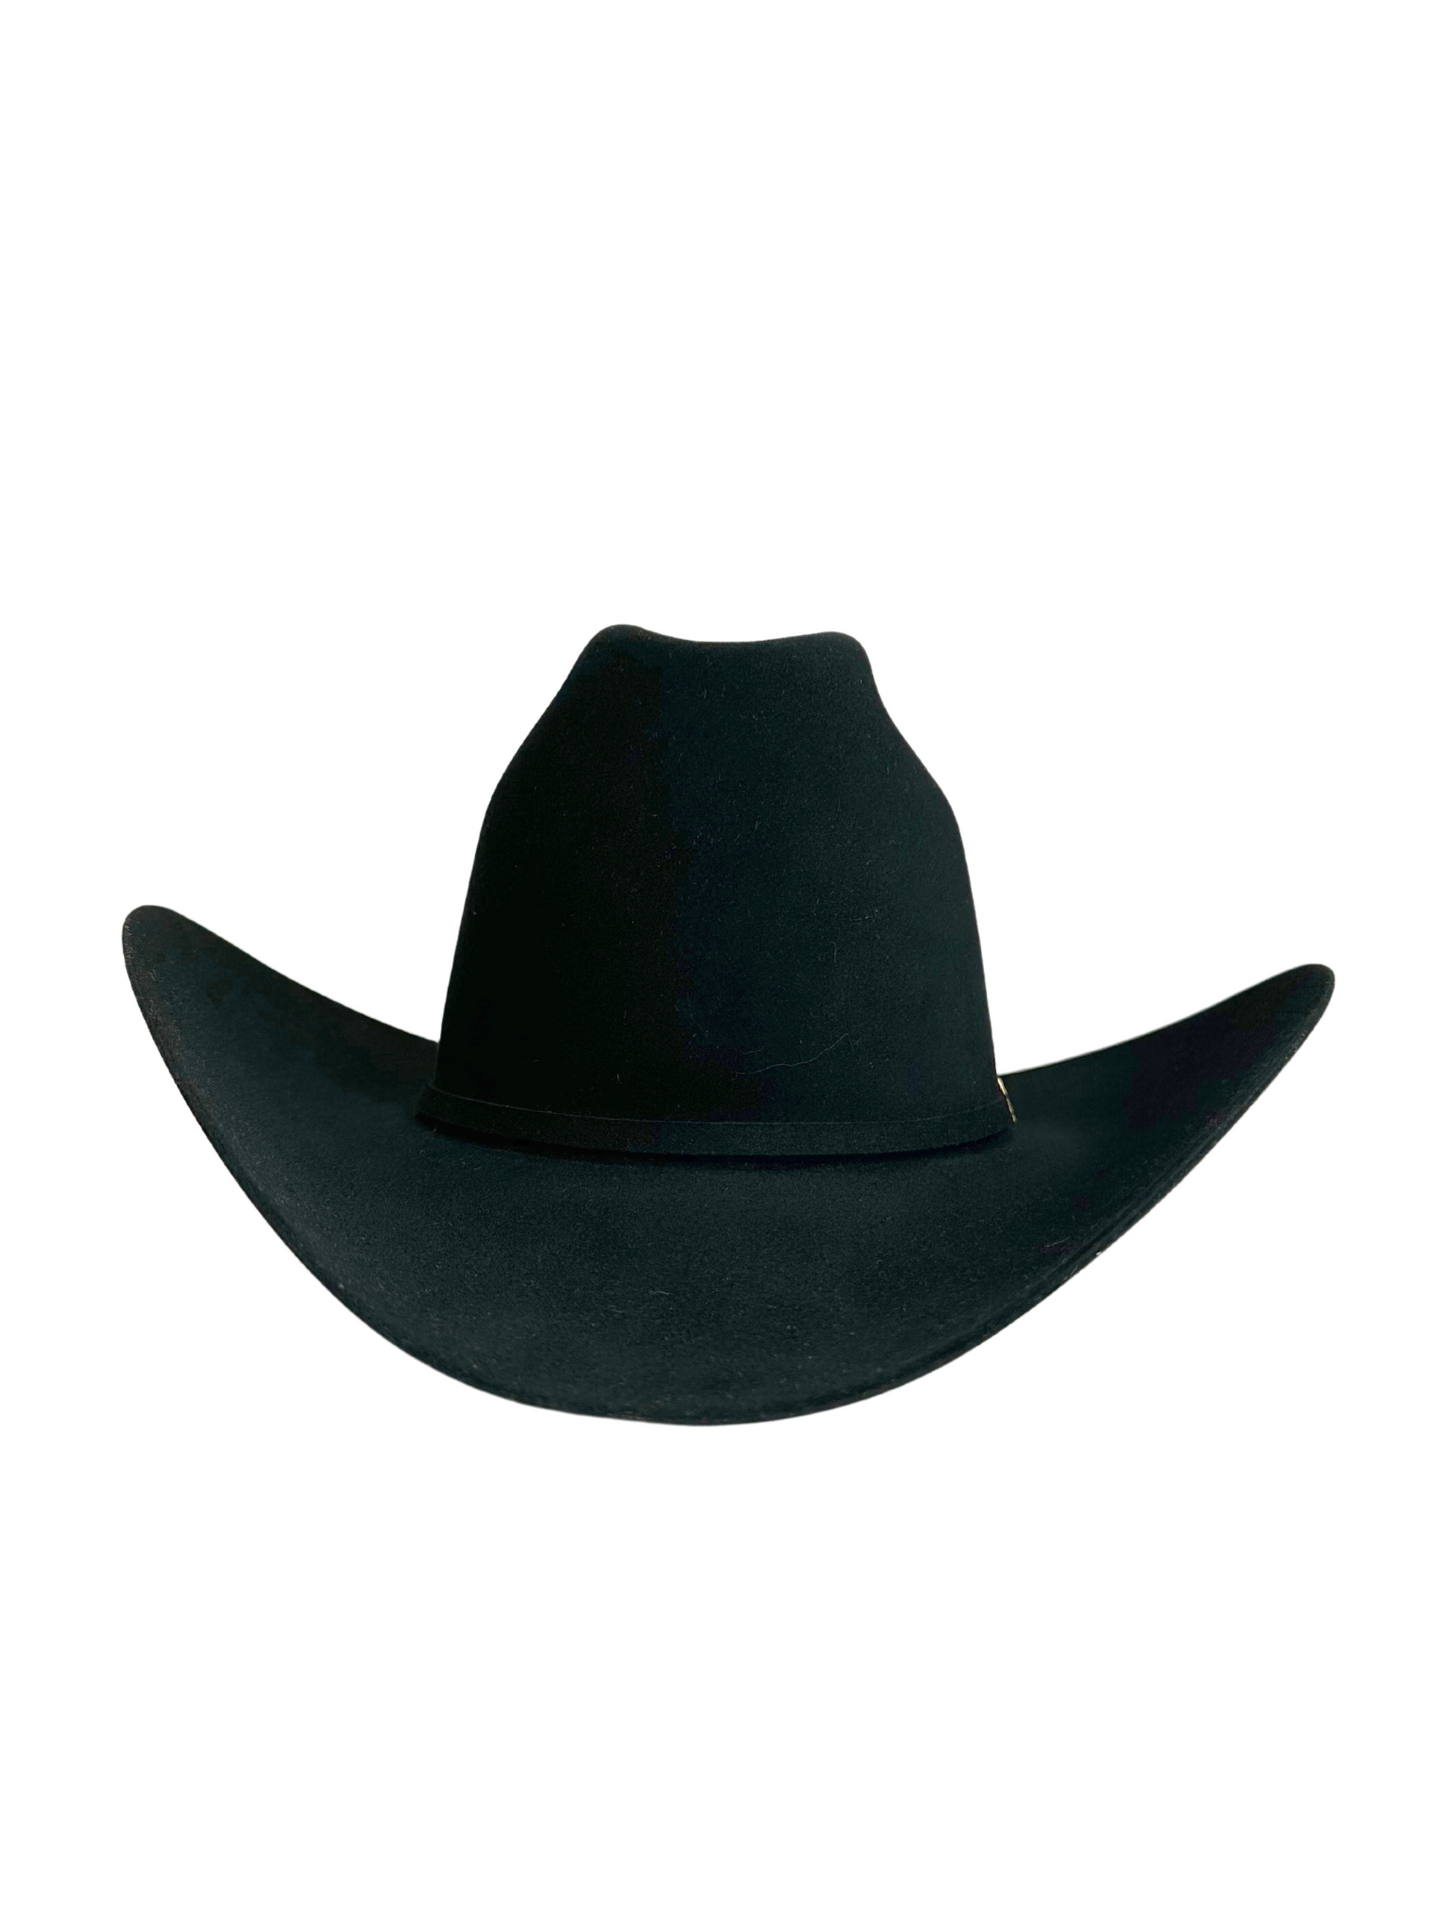 Stetson El Presidente 100X Premier Cowboy Hat - Black